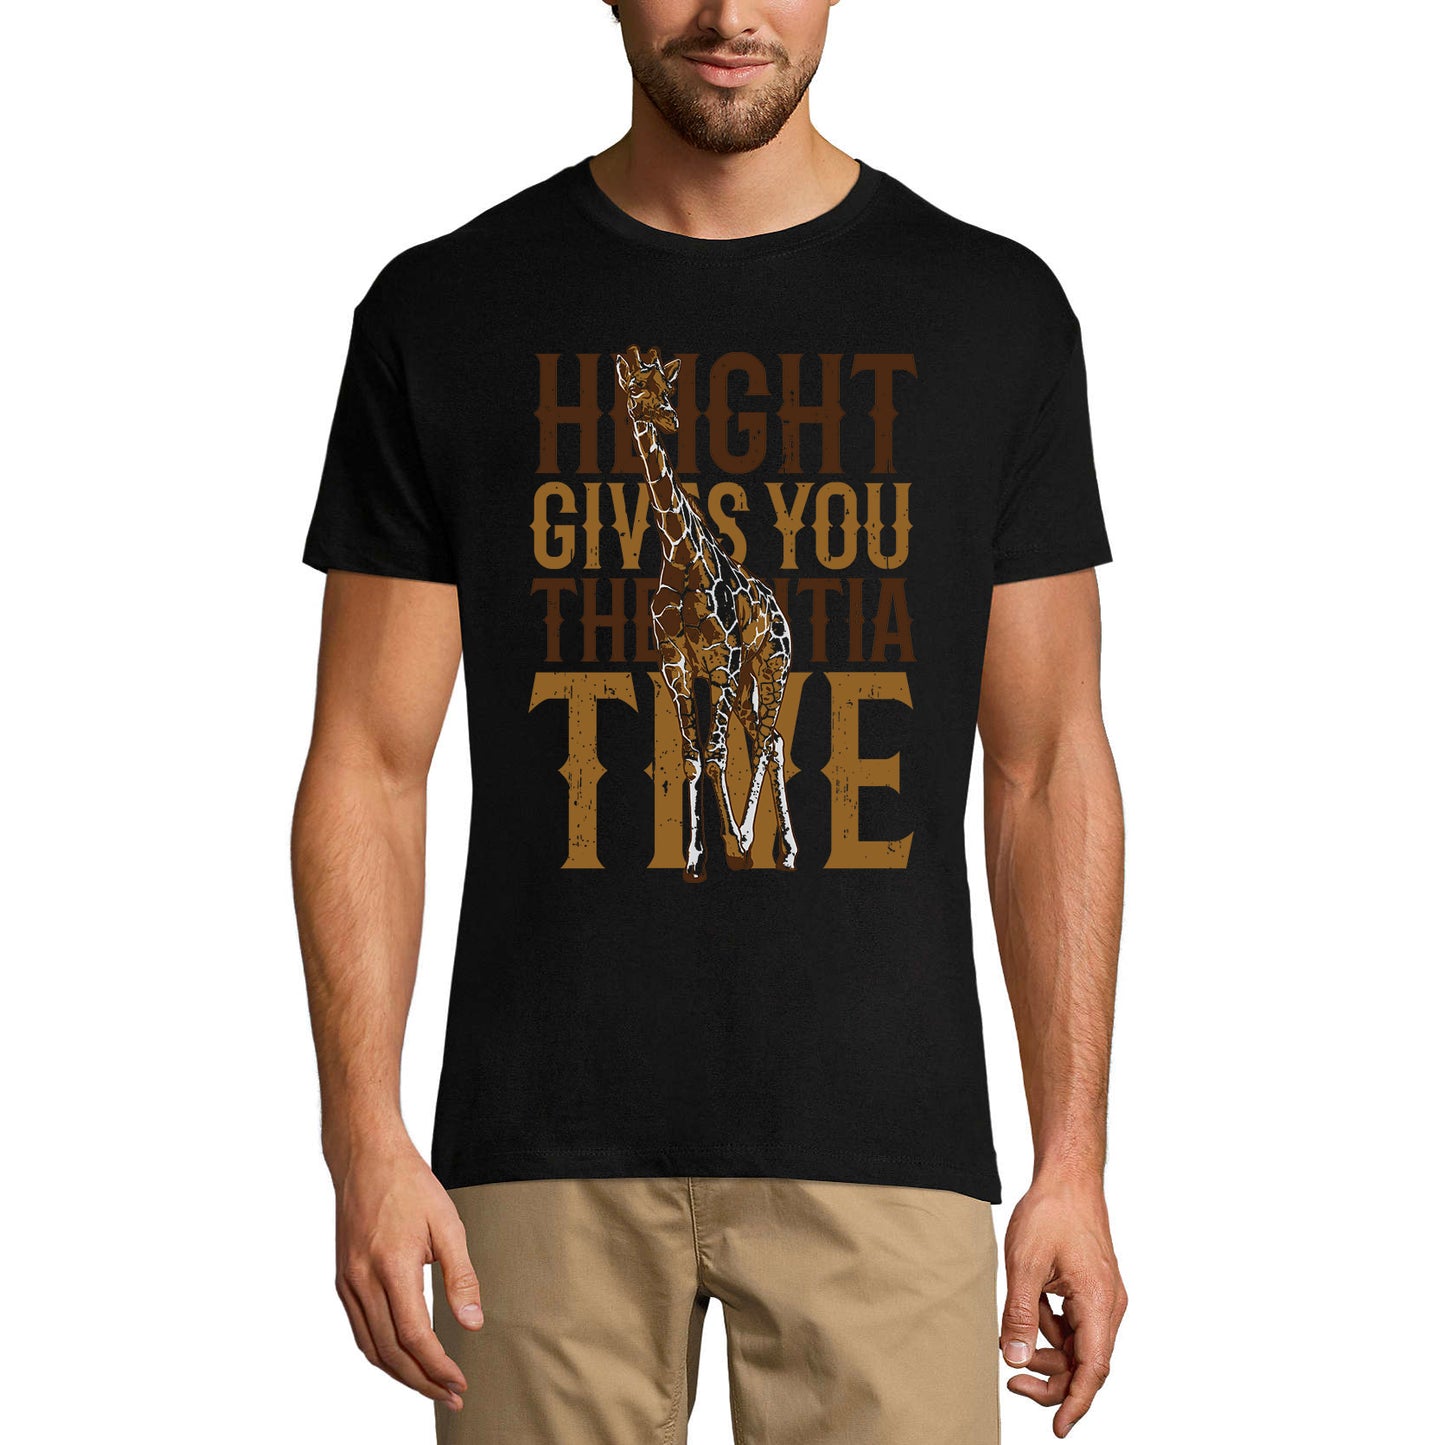 ULTRABASIC Men's Graphic T-Shirt Height Gives You The Initiative - Giraffe Shirt